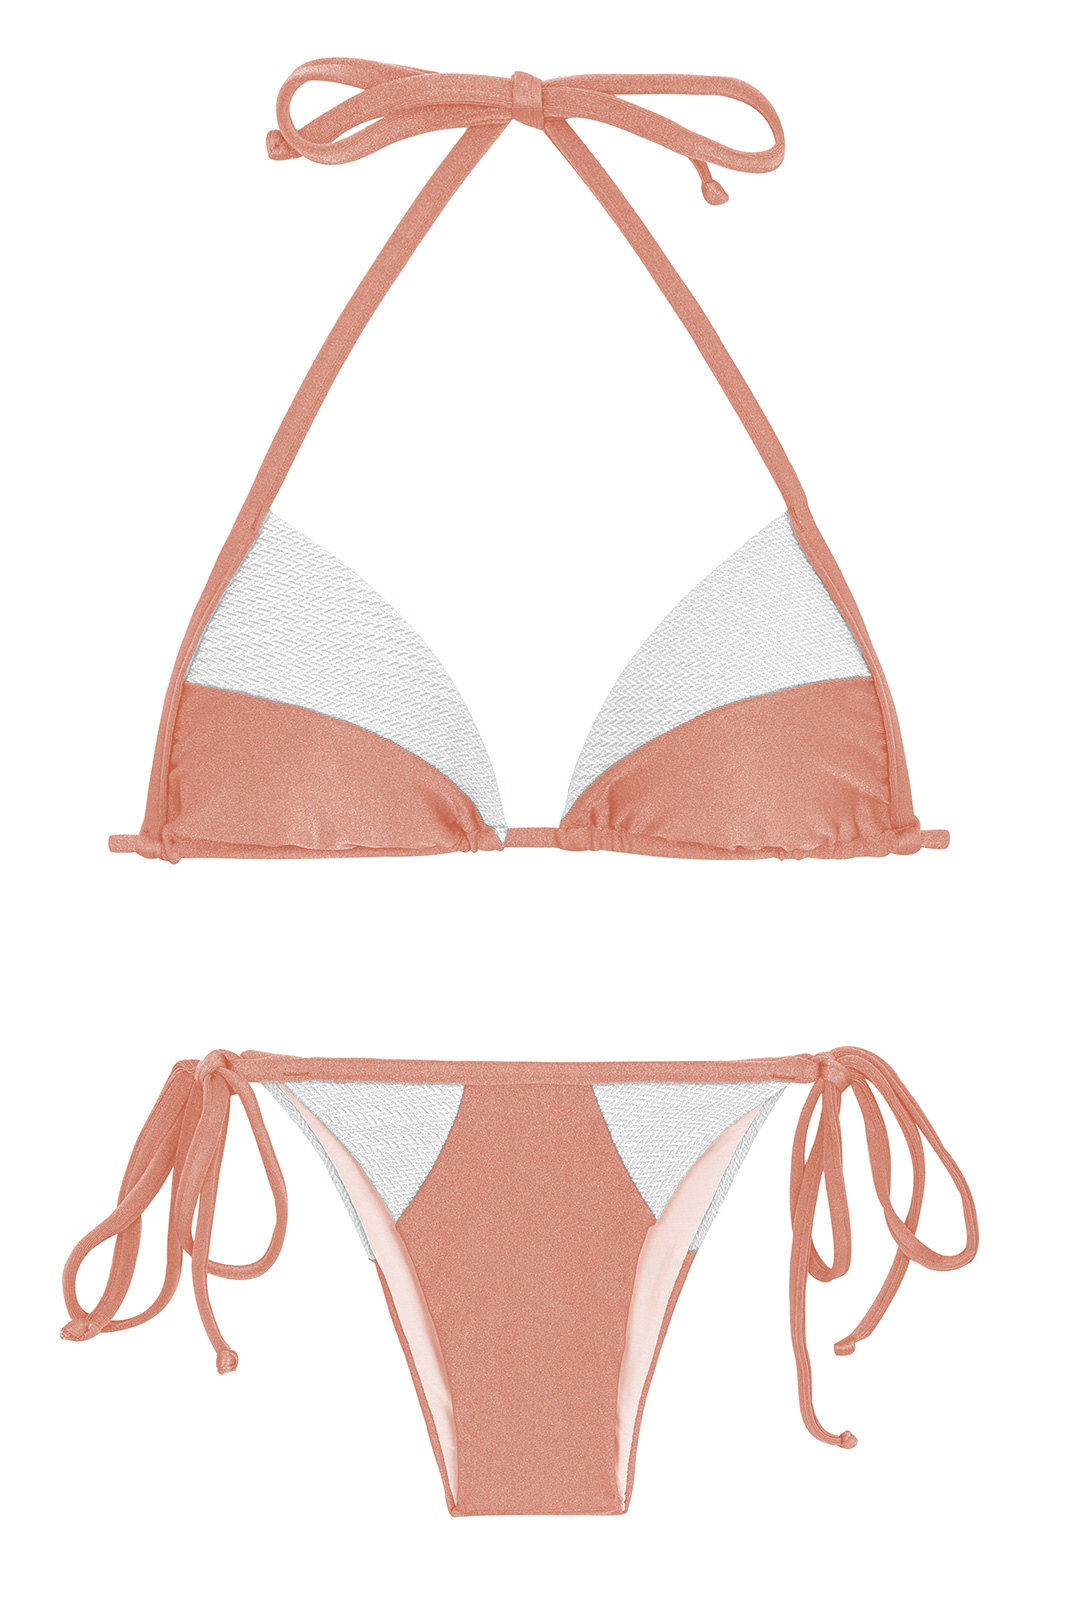 Peach And White Textured Triangle Side-tie Bikini - Rose Recorte Tri ...